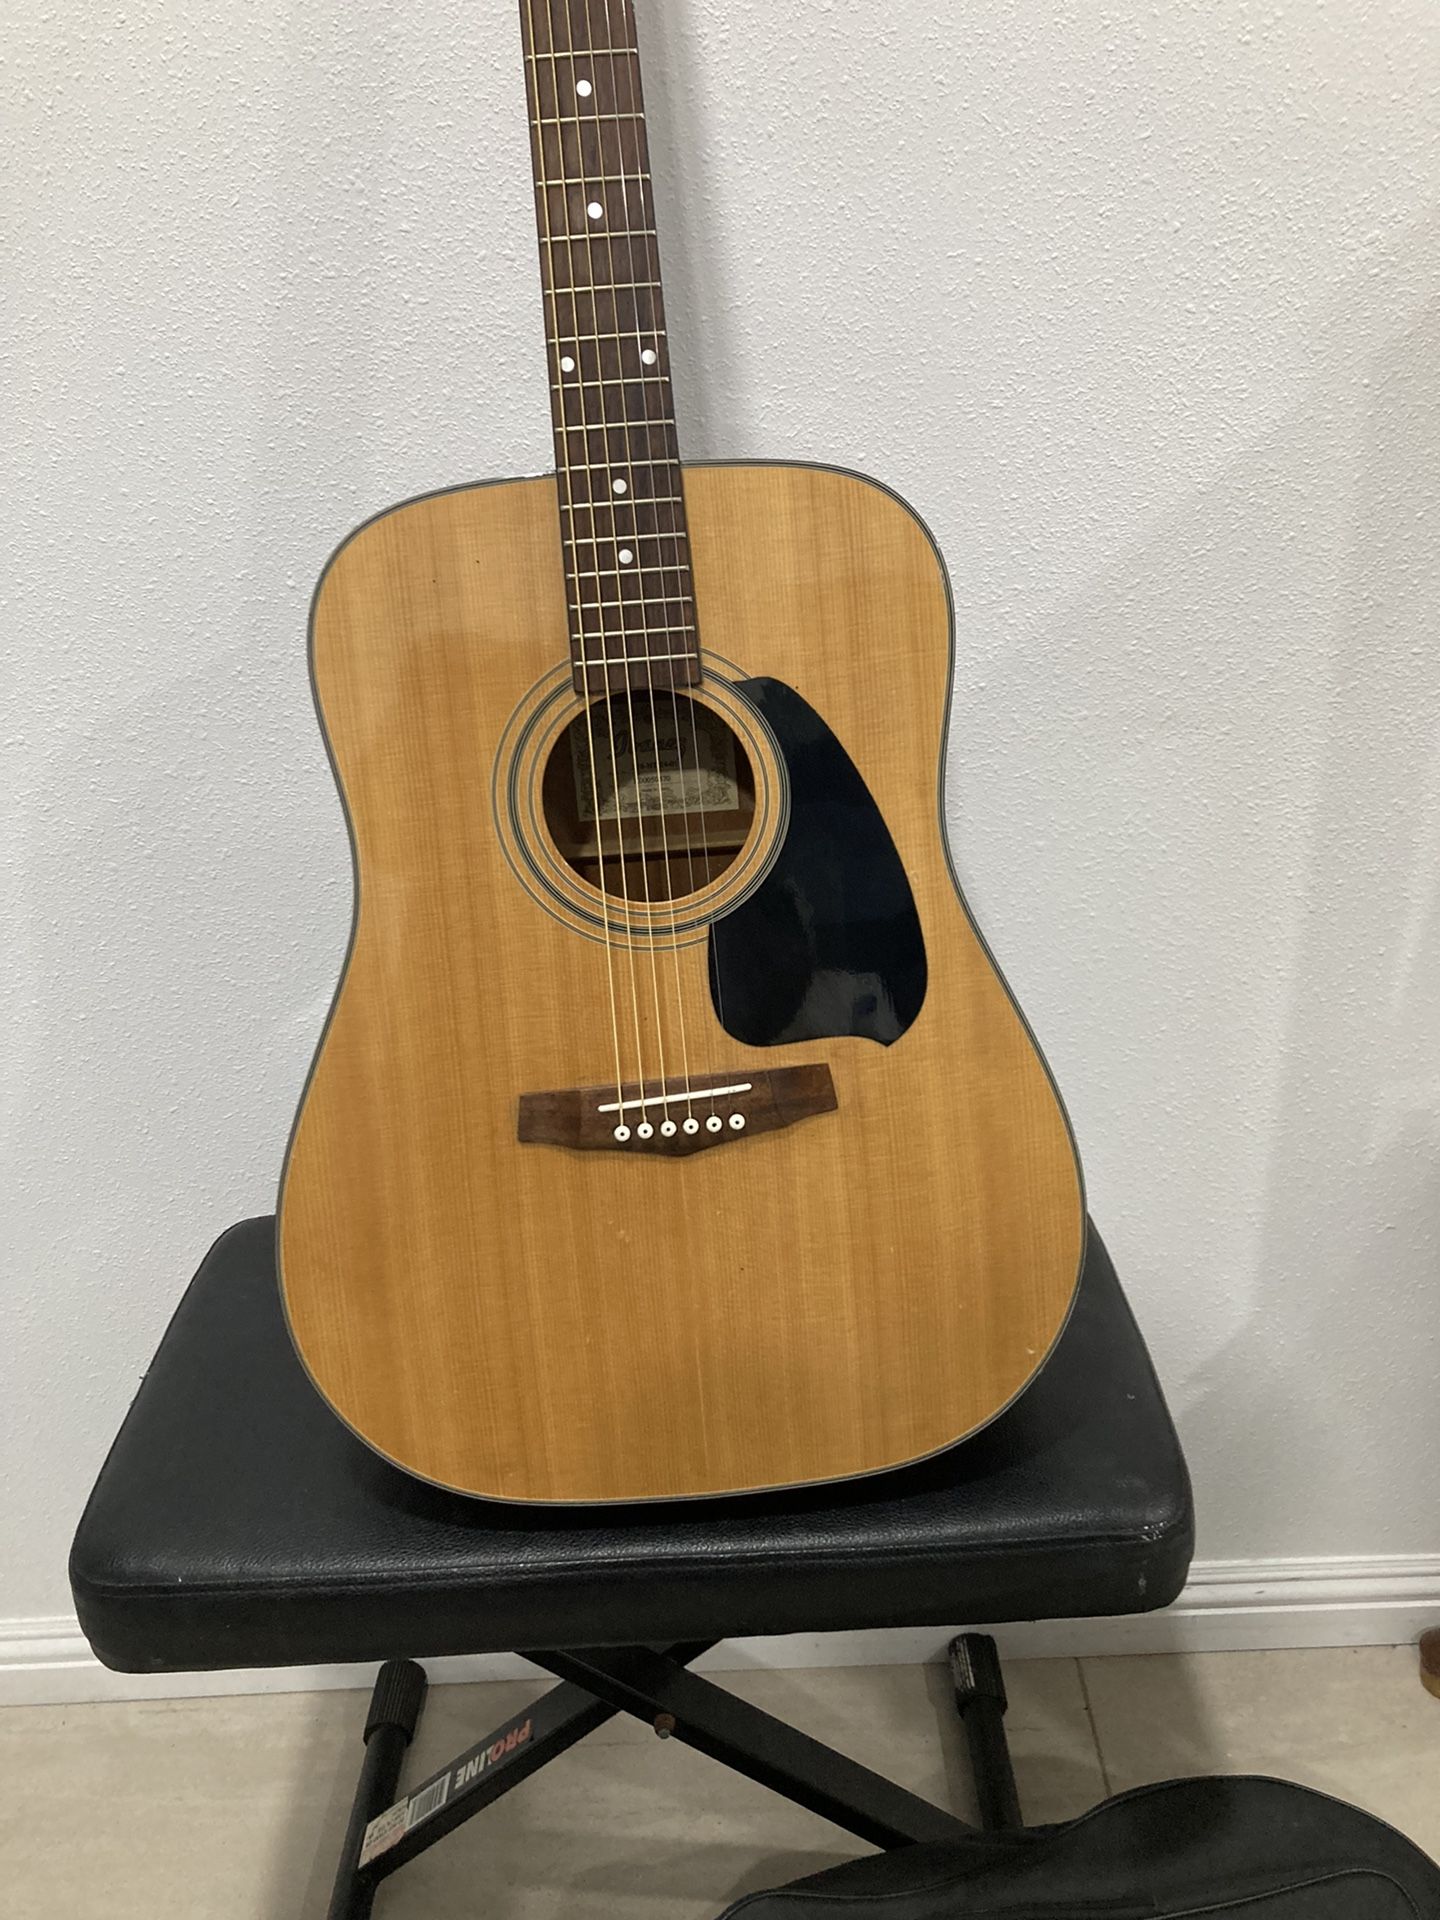 Ibanez Acoustic Guitar Excellent Condition $99